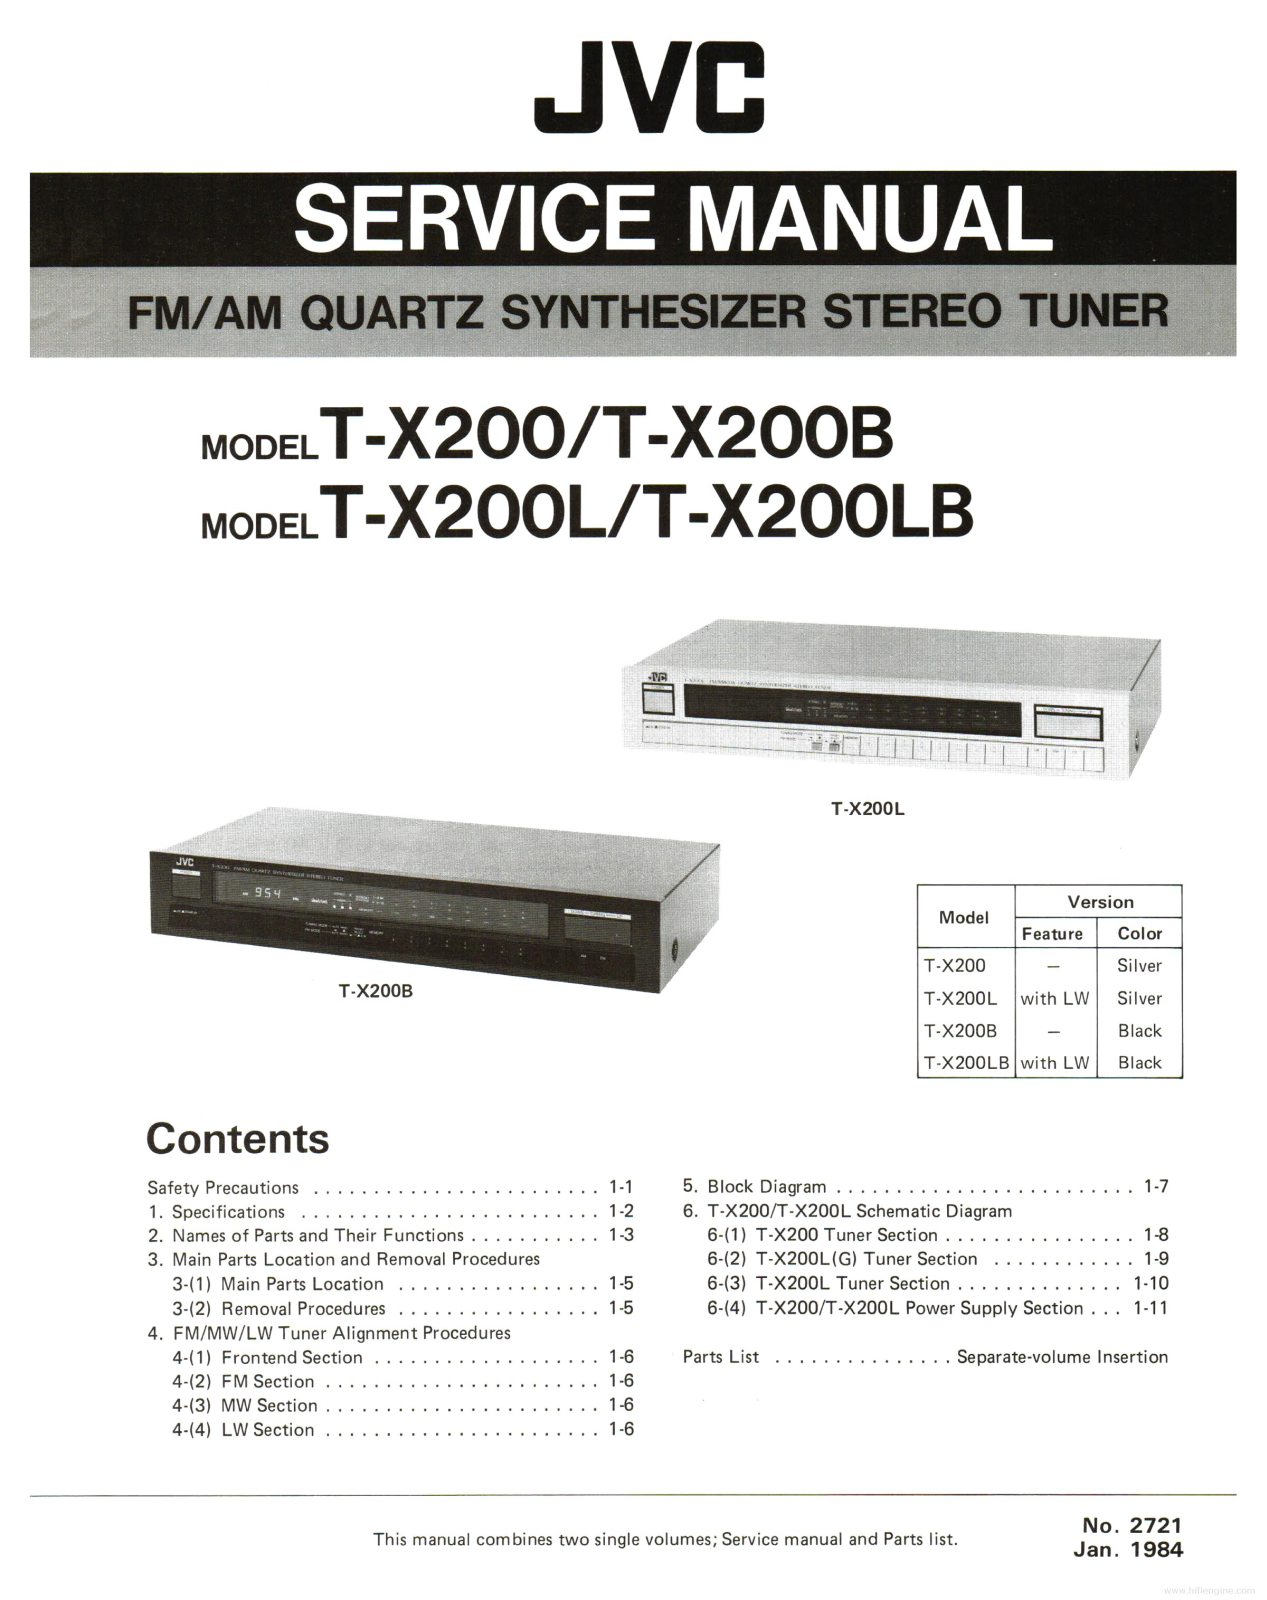 JVC T-X200 Service